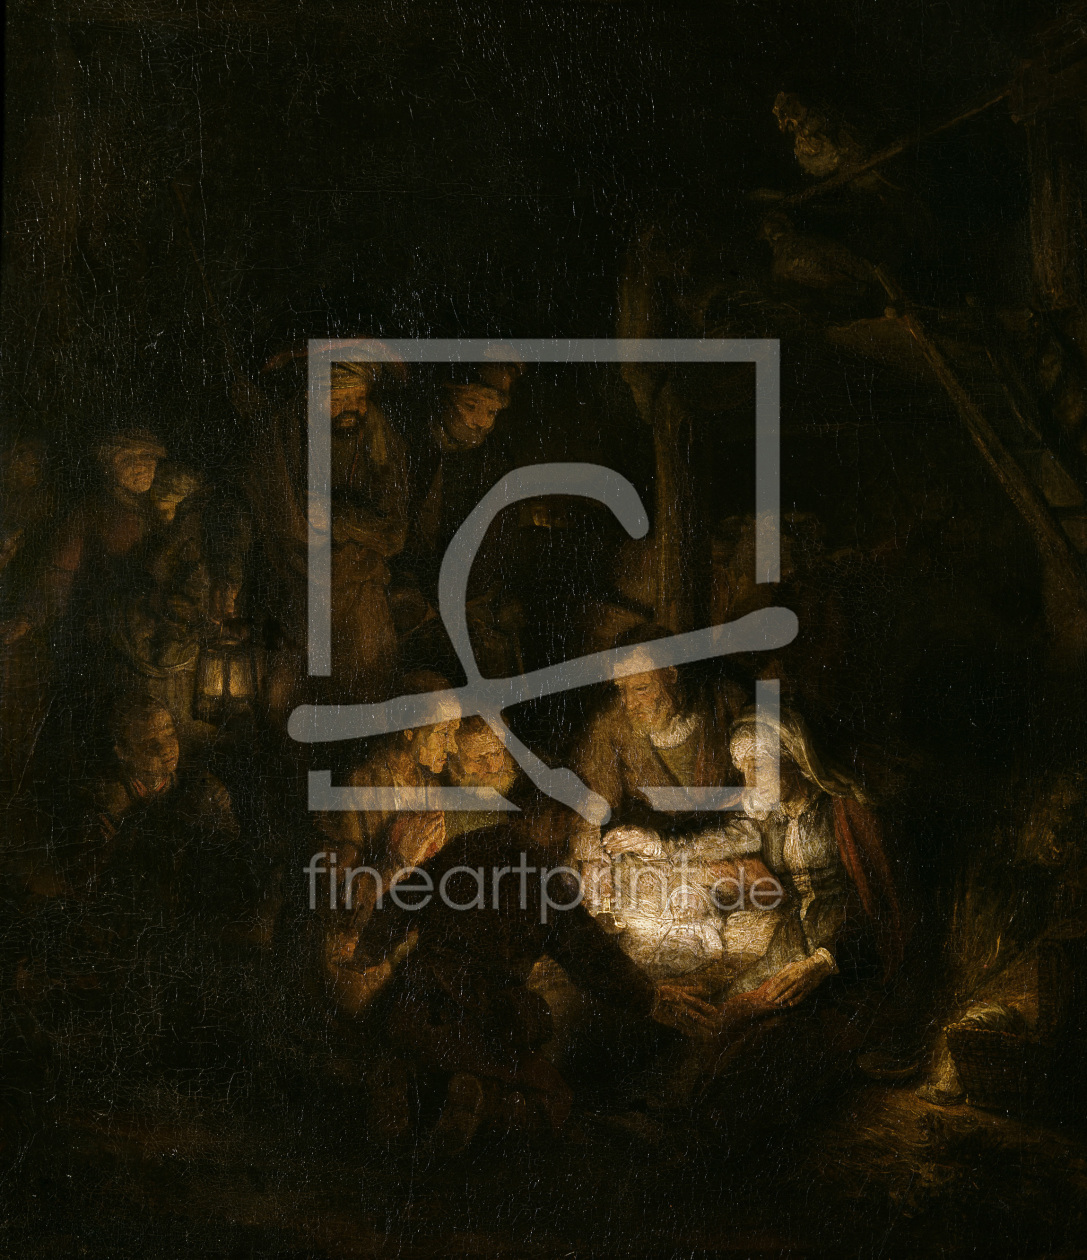 Bild-Nr.: 30007599 Rembrandt / Adoration of the Shepherds erstellt von Rembrandt Harmenszoon van Rijn